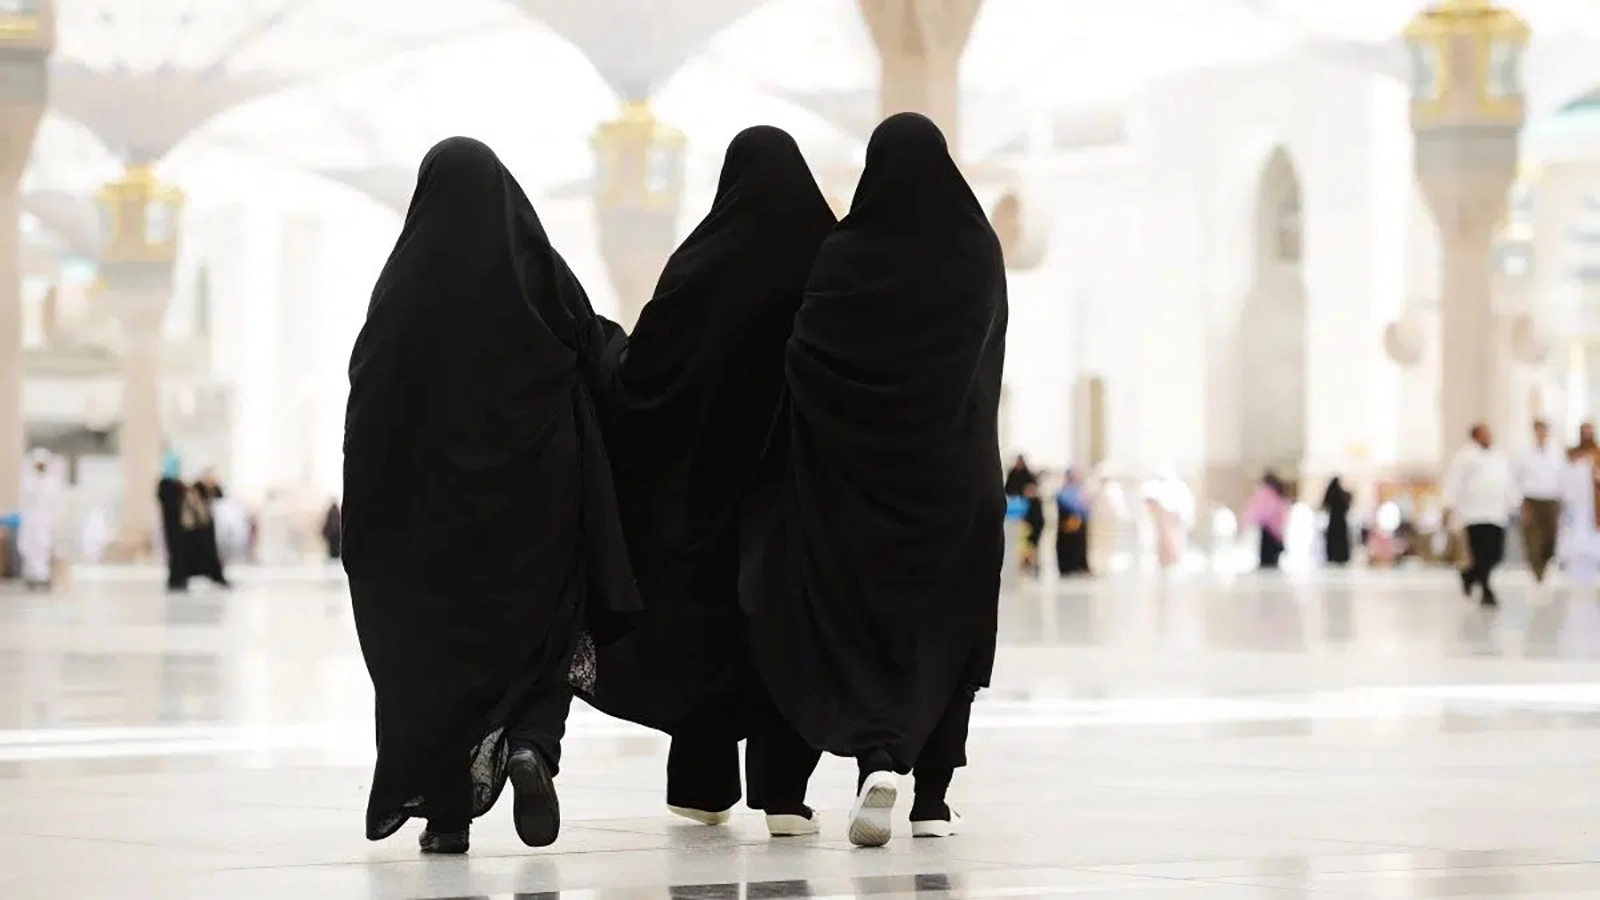 حج المرأة بدون محرم.. السعودية تسمح والإفتاء المصرية توافق بشرط واحد